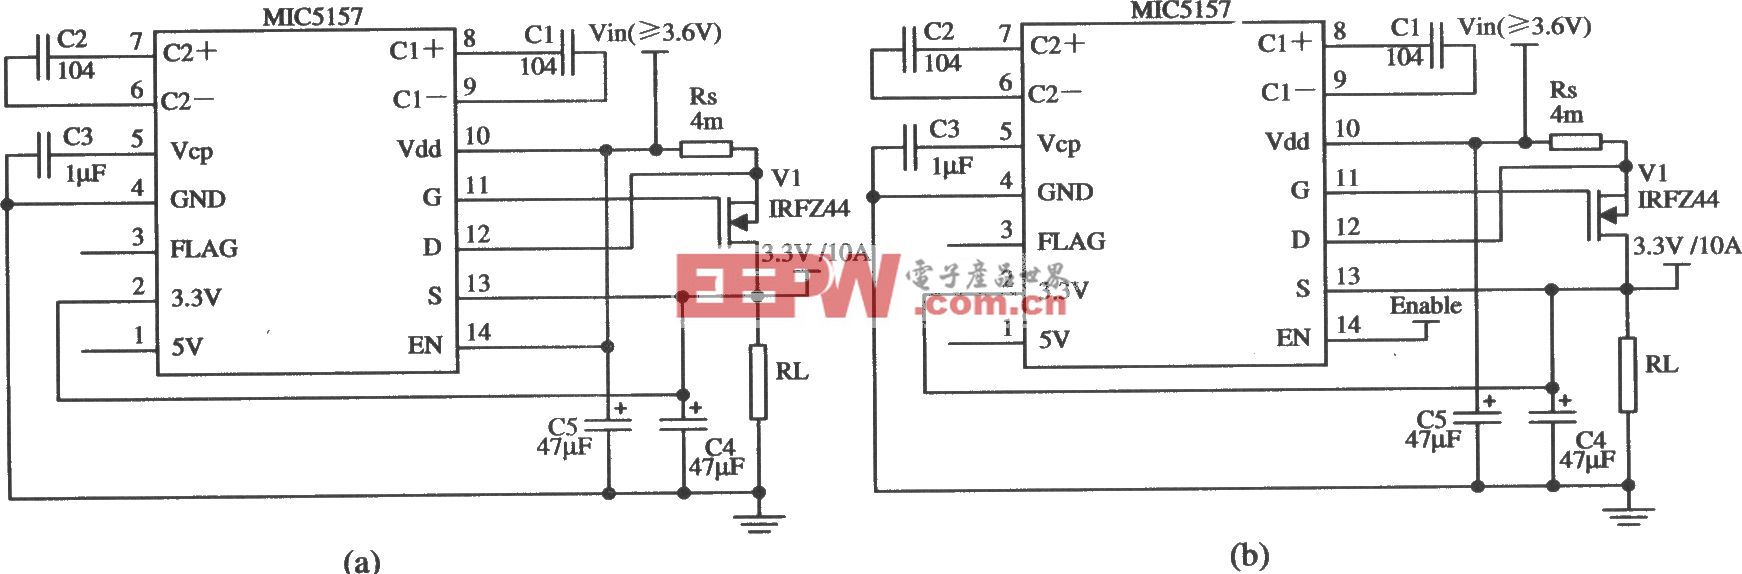 由MIC5157构成的输出3.3 V／lOA的线性稳压器电路